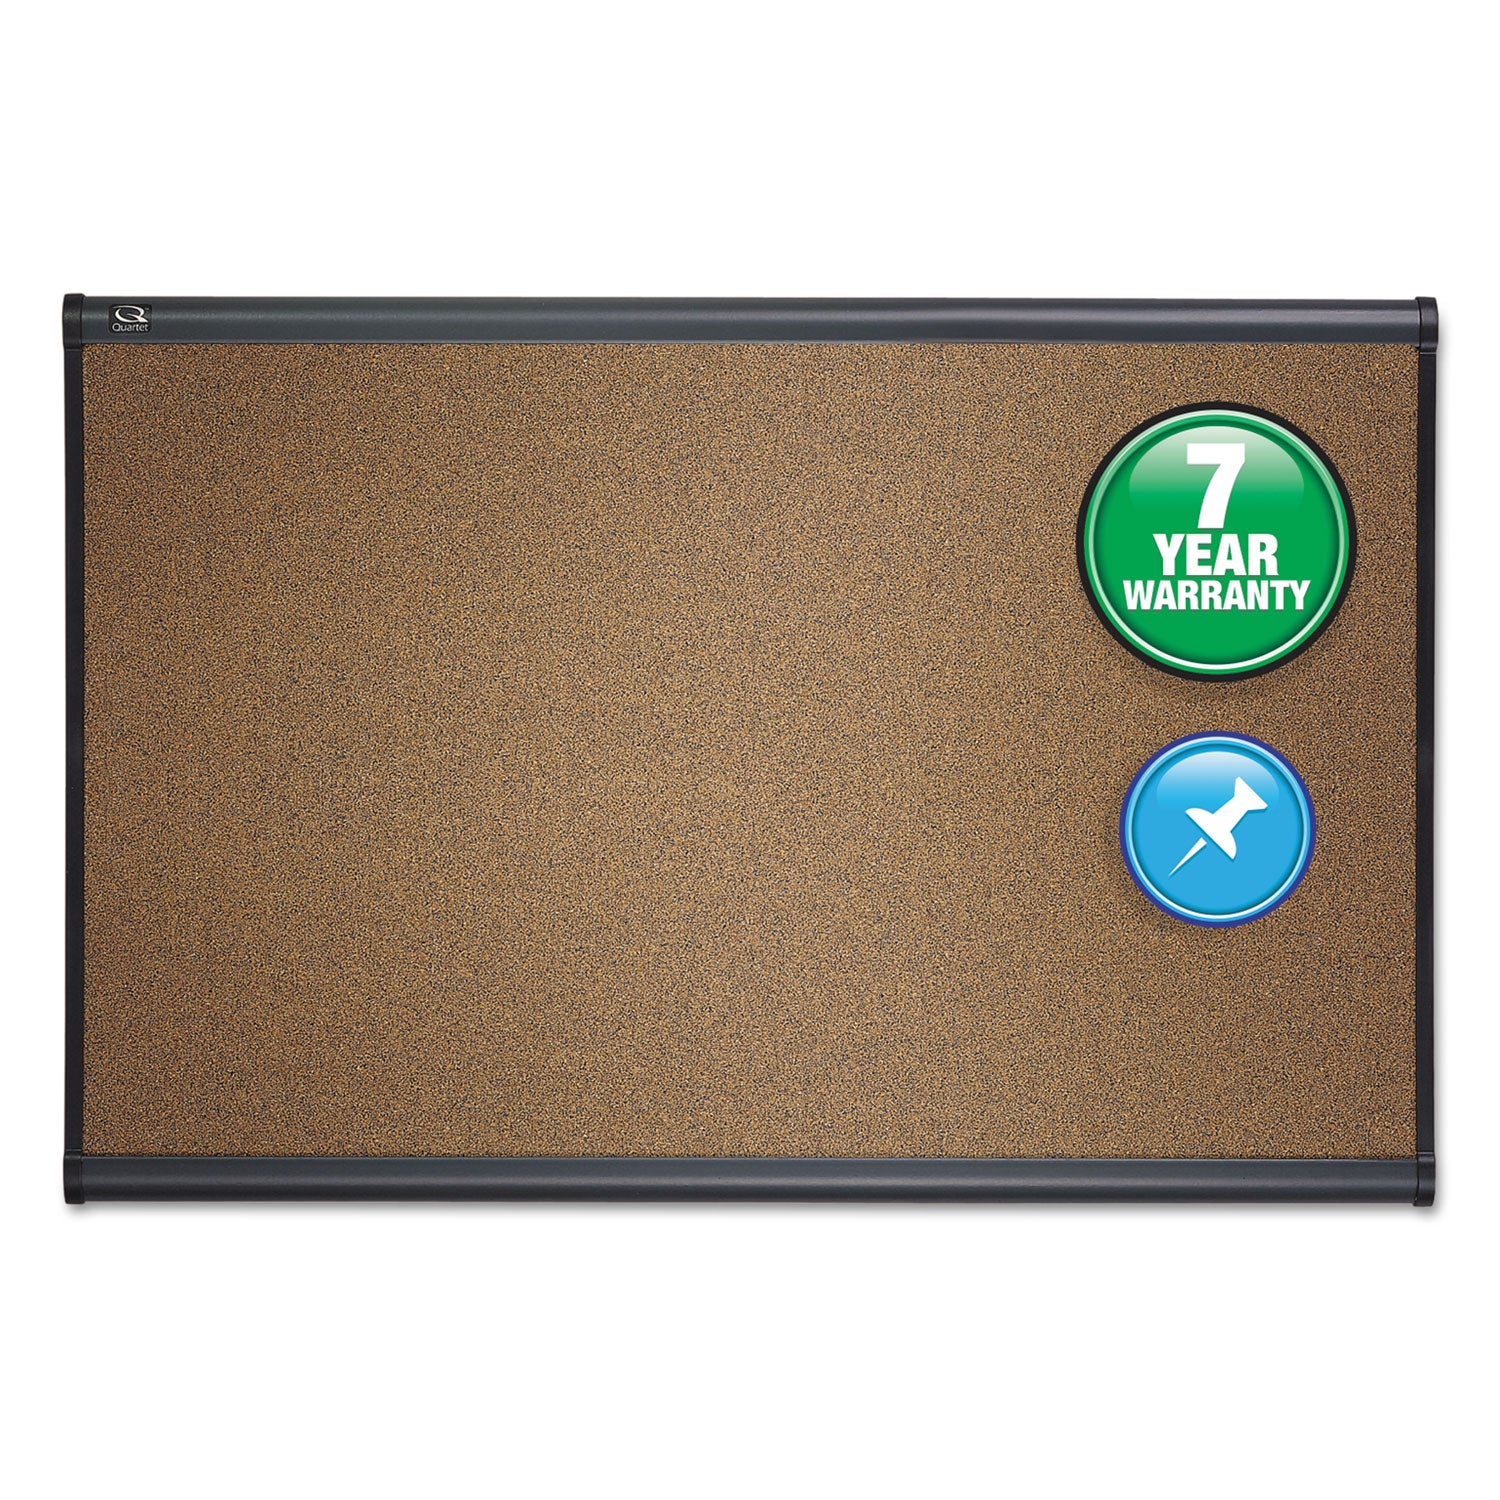 Prestige Colored Cork Bulletin Board, 36 x 24, Brown Surface, Graphite Gray Fiberboard/Plastic Frame - 